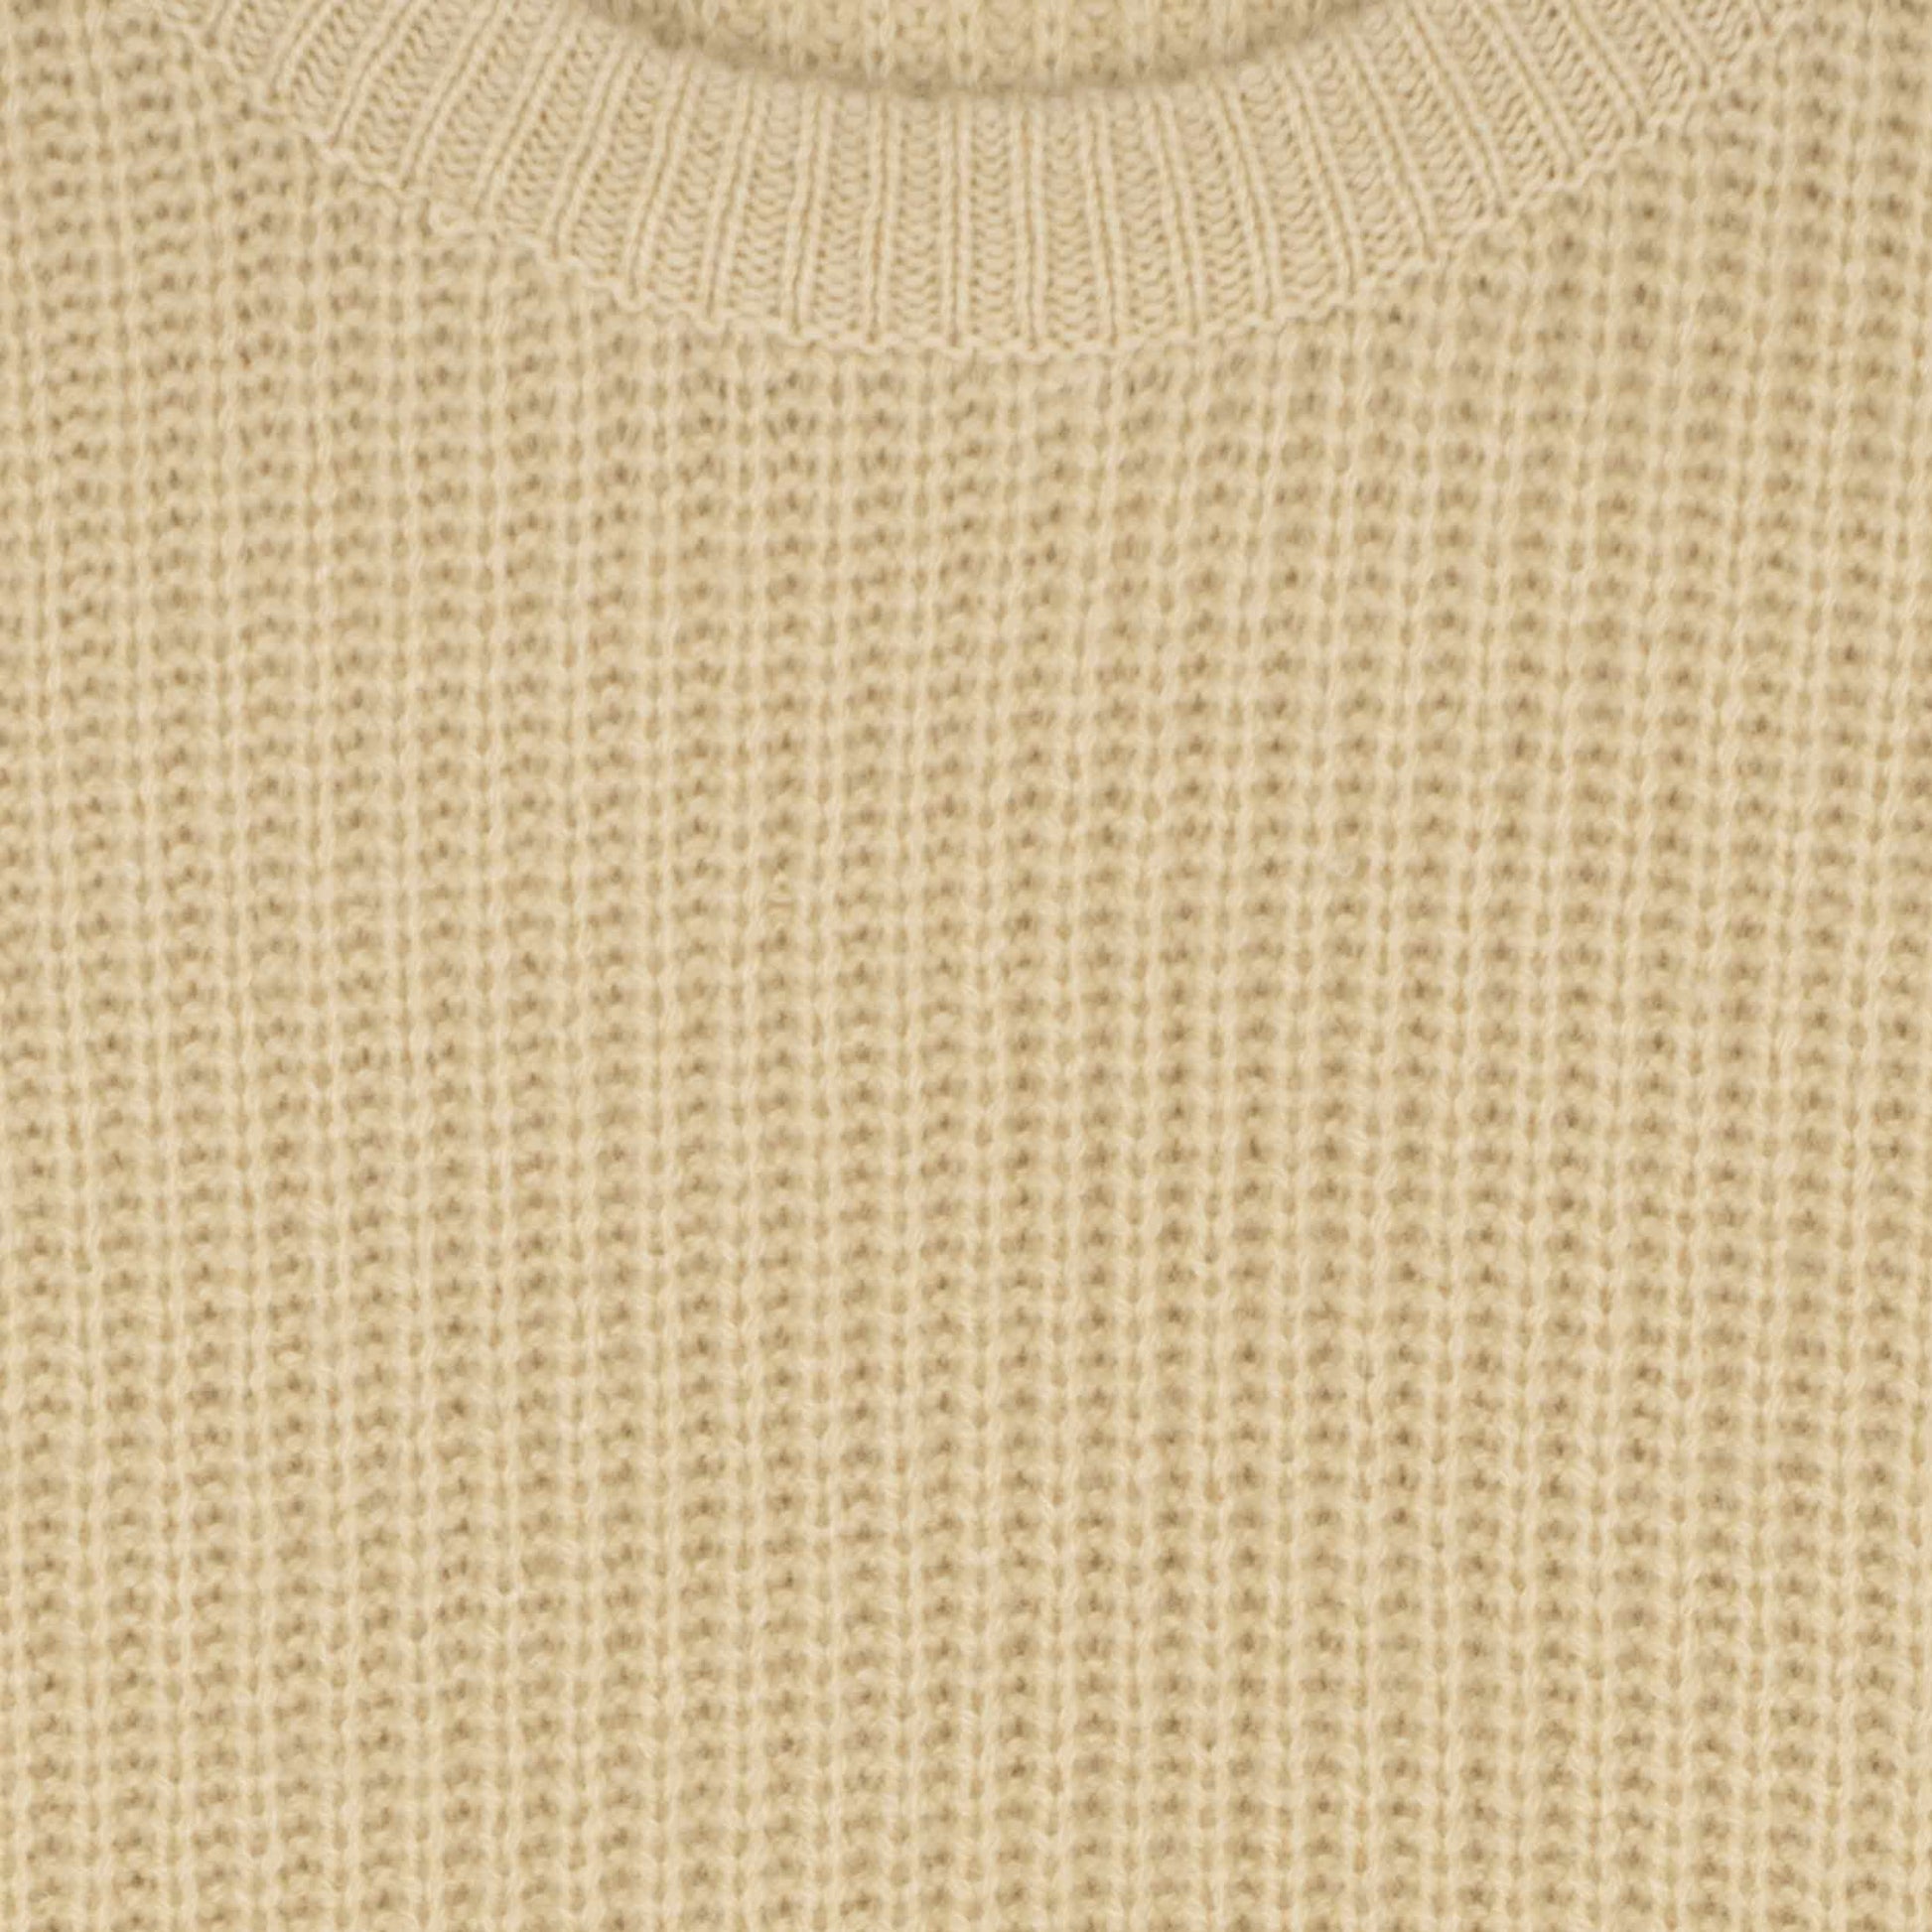 Himalayan Cashmere Shaker Stitch Crewneck Sweater in Ecru